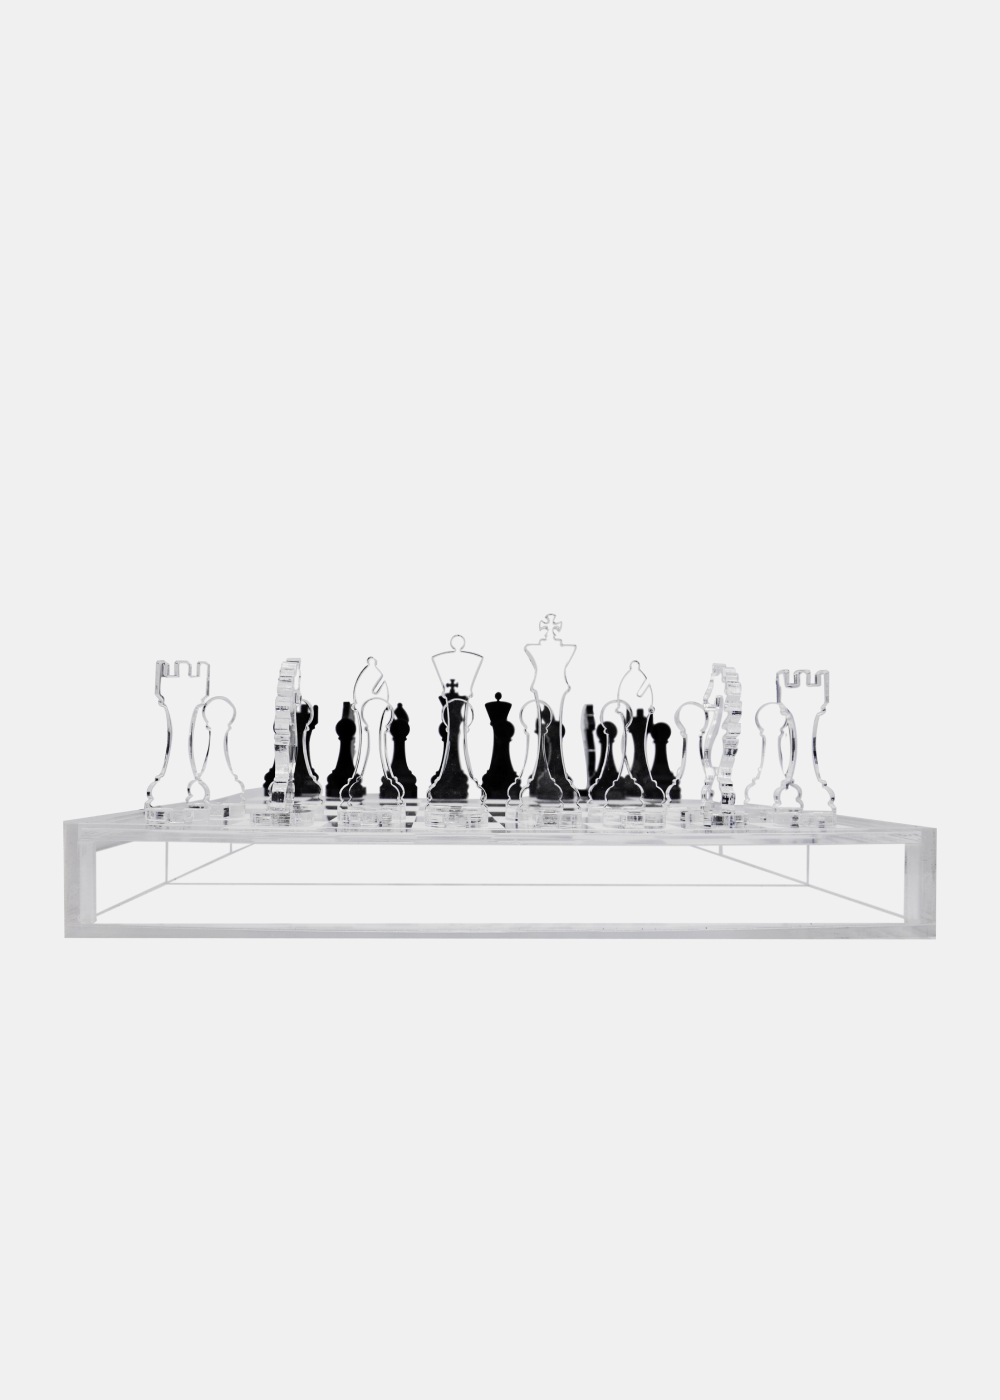 Tabuleiro de xadrez com peças de xadrez colocadas em um fundo preto  isolado, Banco de Video - Envato Elements